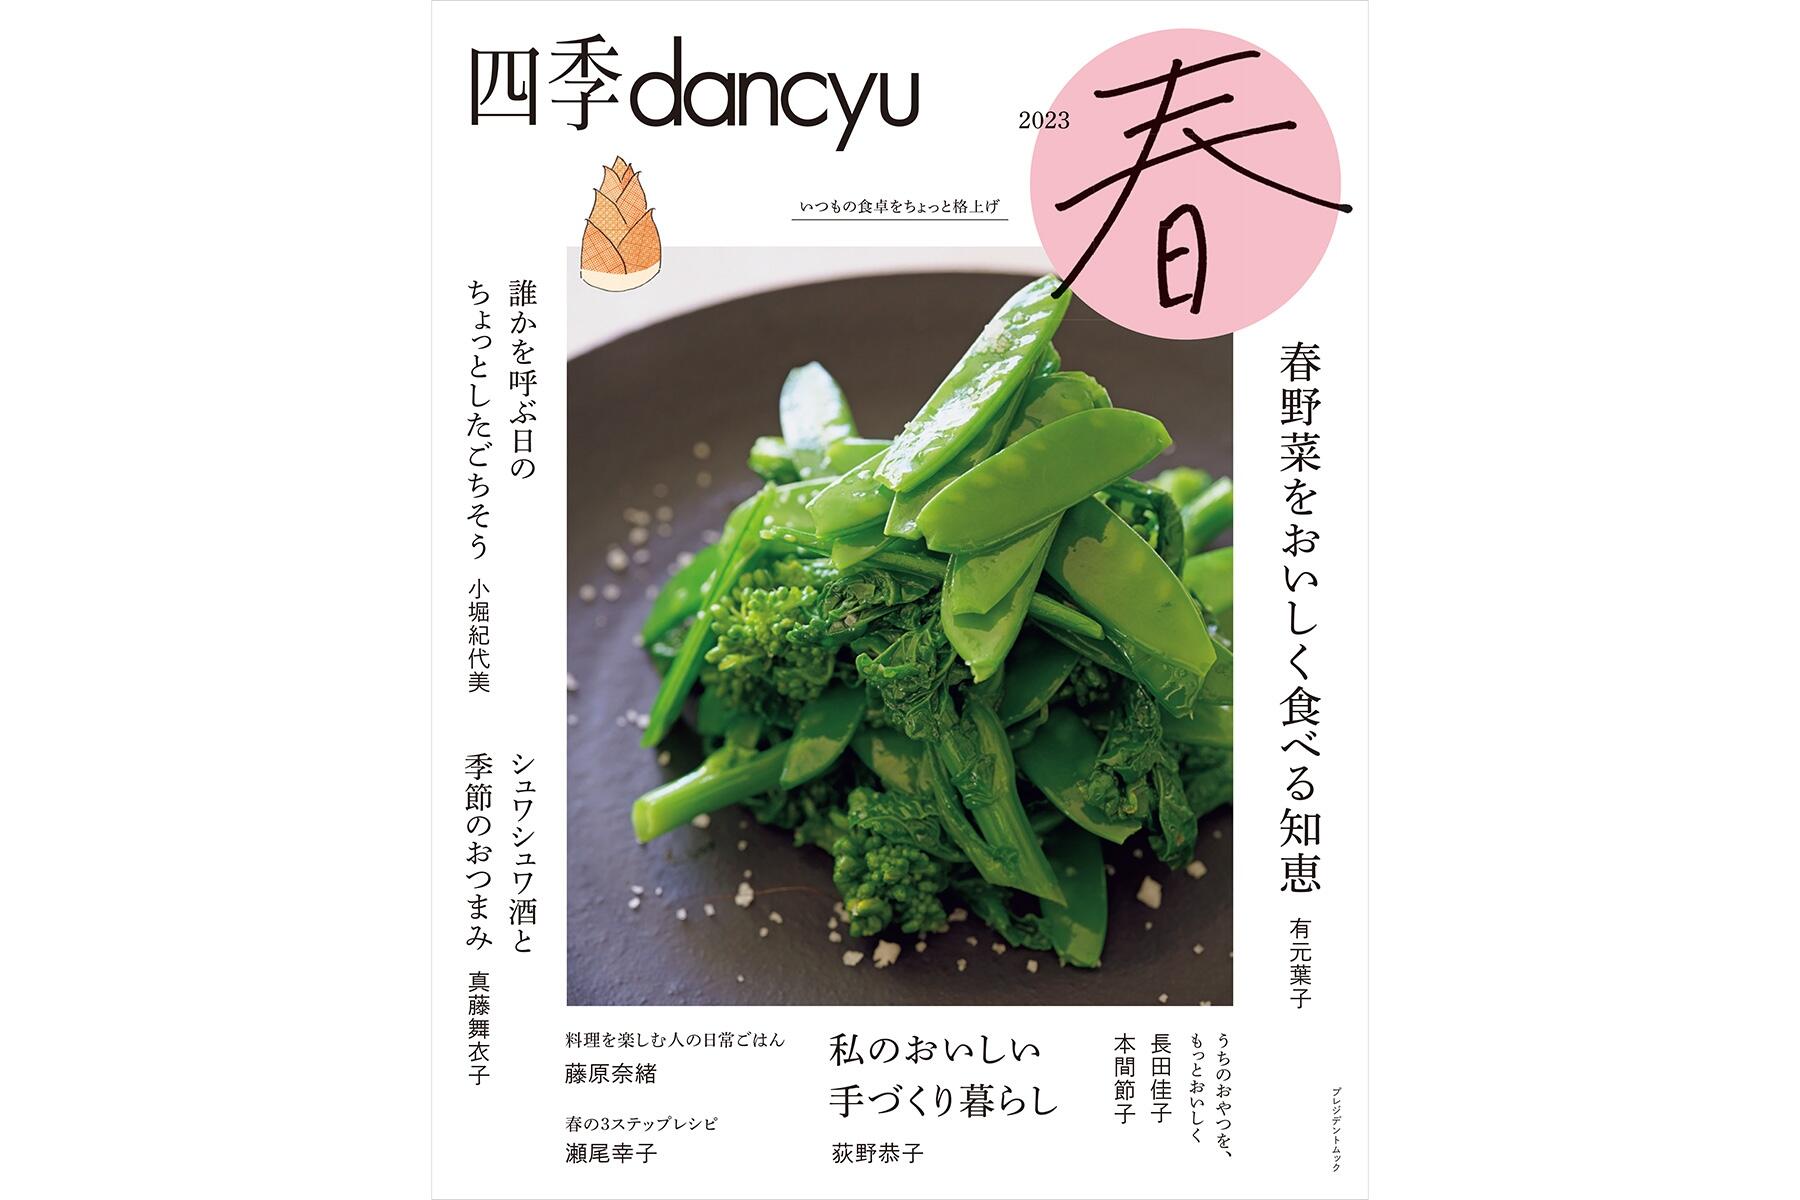 食卓にも春爛漫！「四季dancyu2023春」は本日発売です | dancyuムックから | 【公式】dancyu (ダンチュウ)